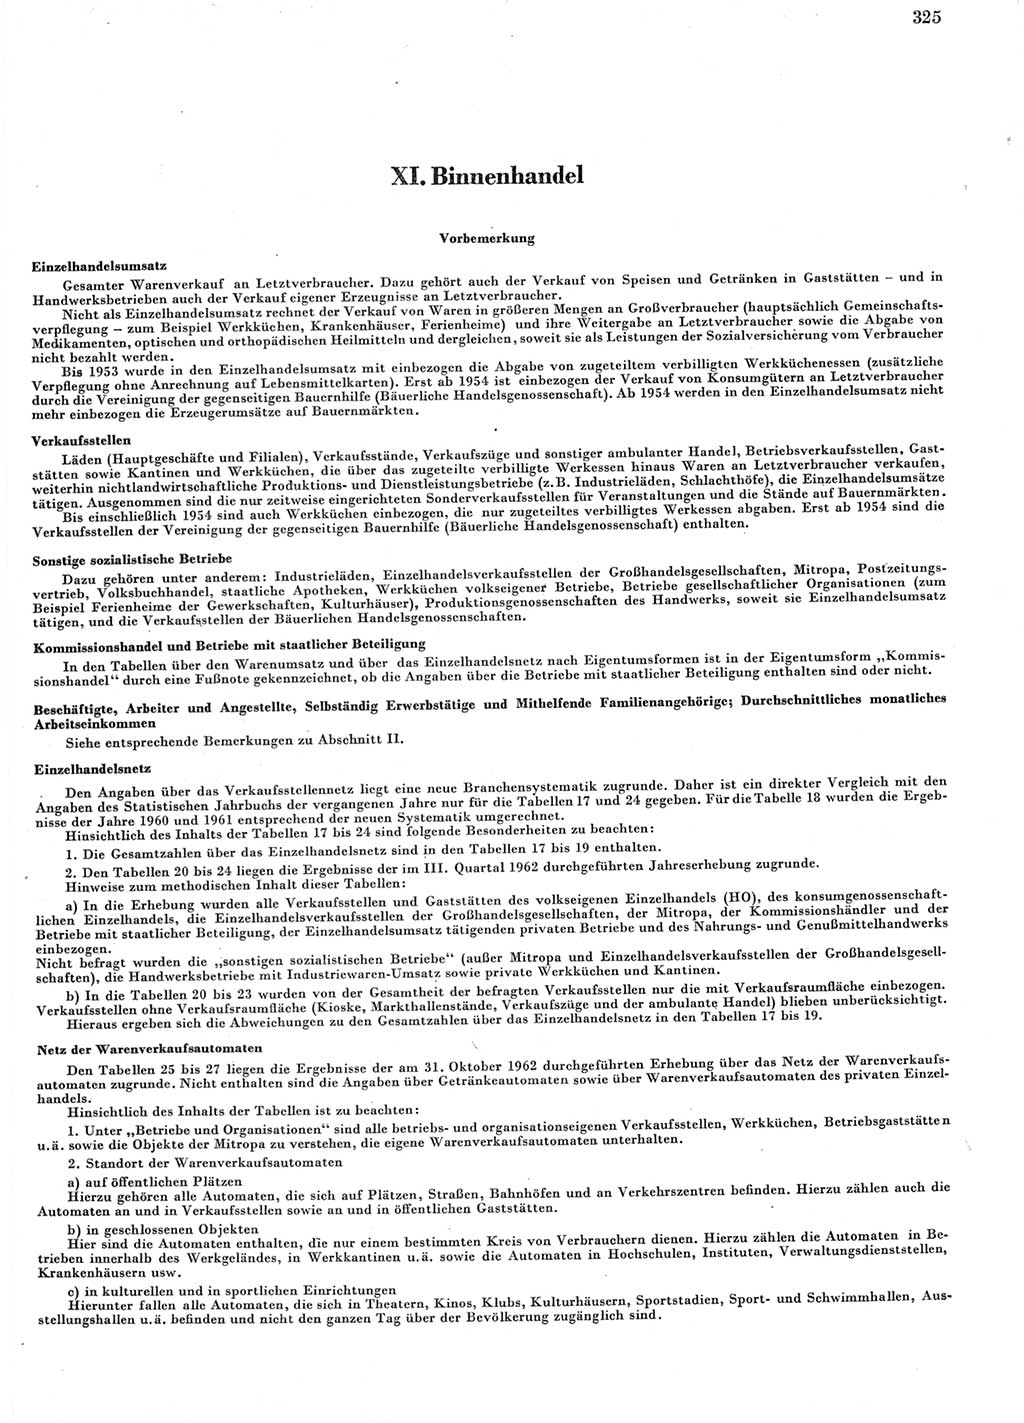 Statistisches Jahrbuch der Deutschen Demokratischen Republik (DDR) 1963, Seite 325 (Stat. Jb. DDR 1963, S. 325)